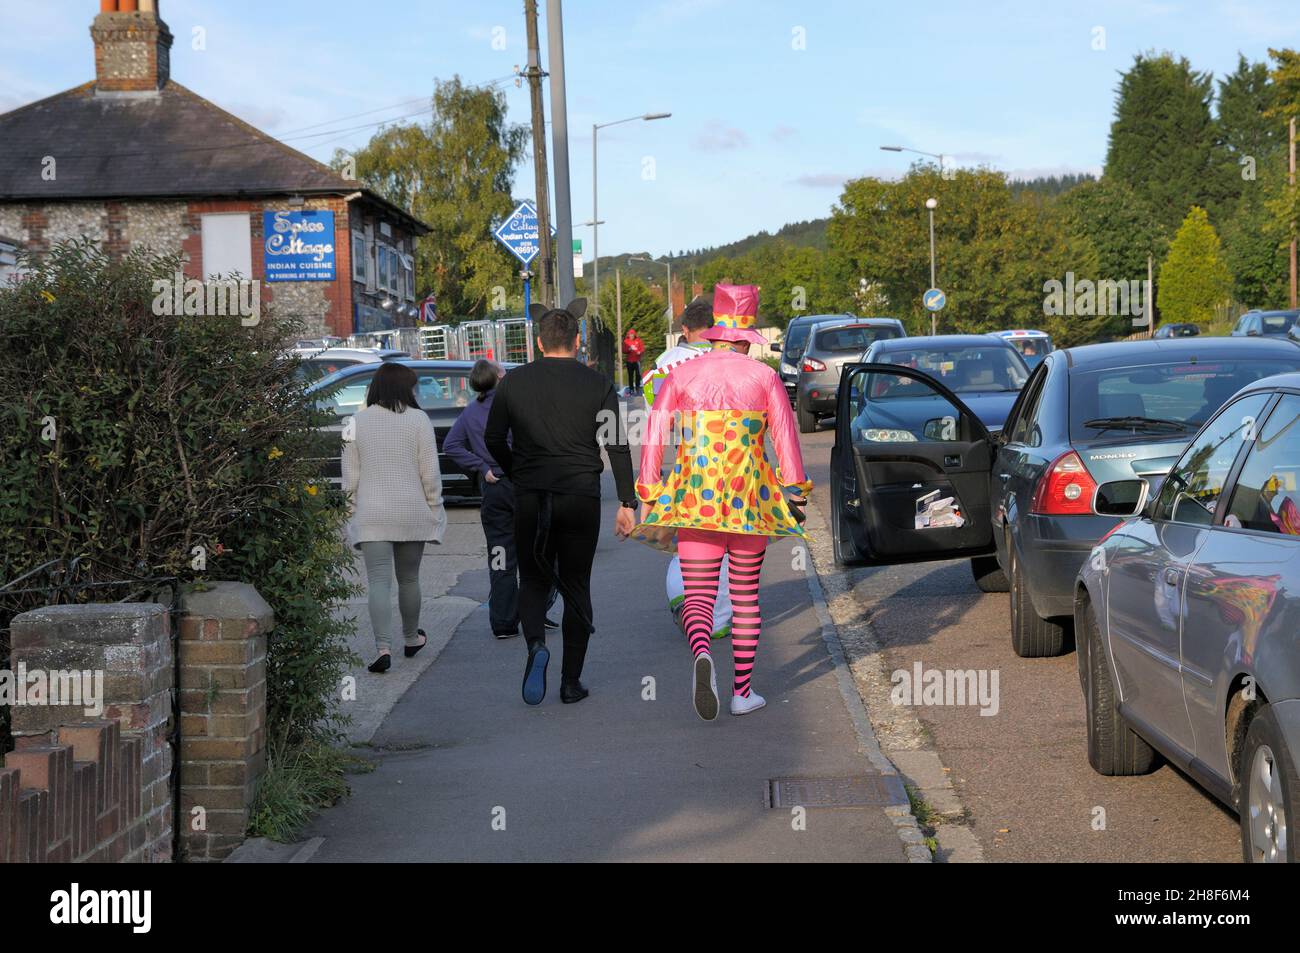 Jeunes hommes marchant dans une rue dans des costumes humoristiques déguisés sur un stag do, Royaume-Uni Banque D'Images